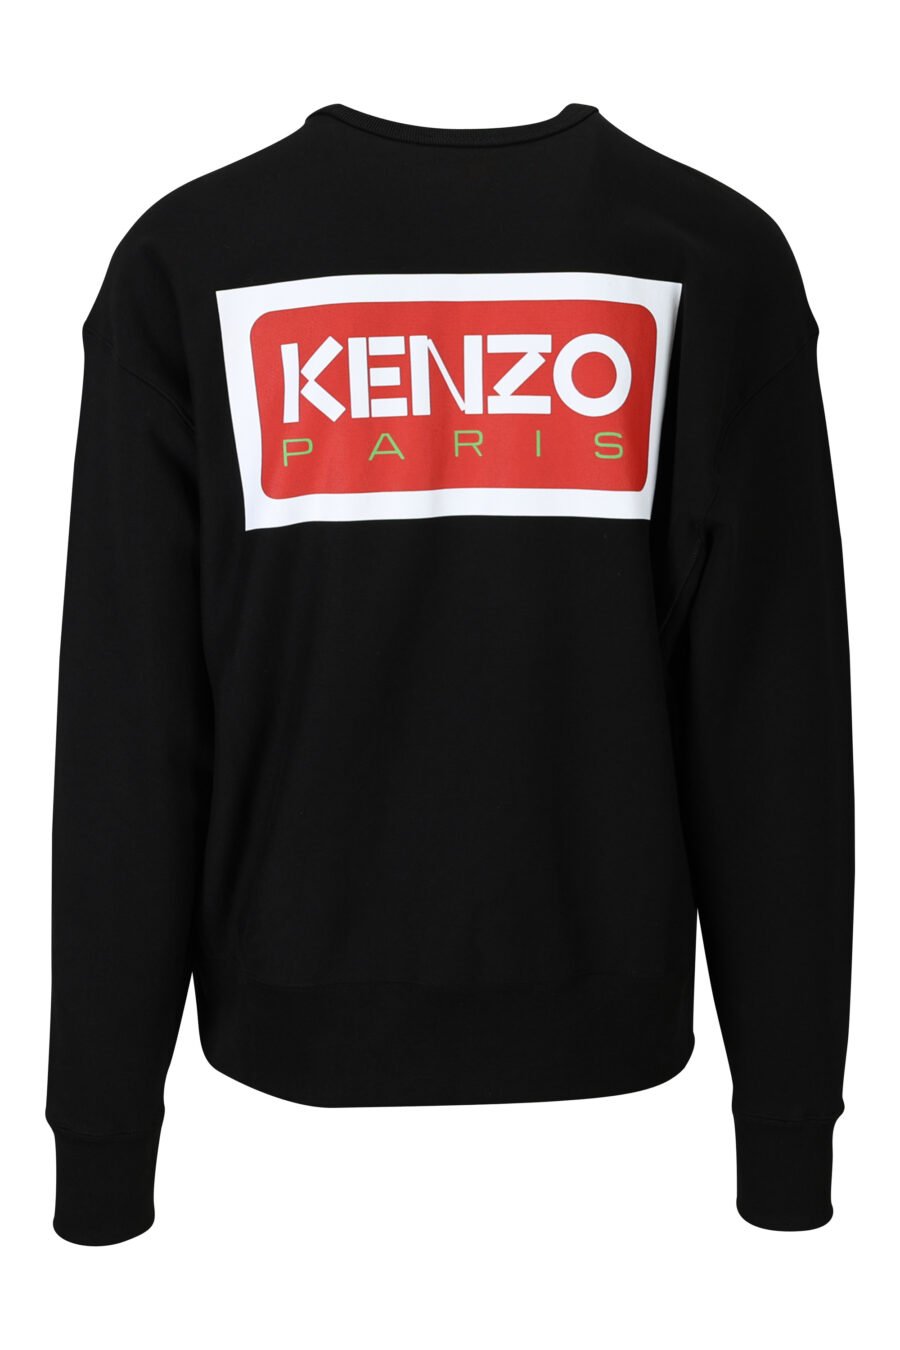 Sweatshirt preta de tamanho grande com mini logótipo "kenzo paris" - 3612230537675 1